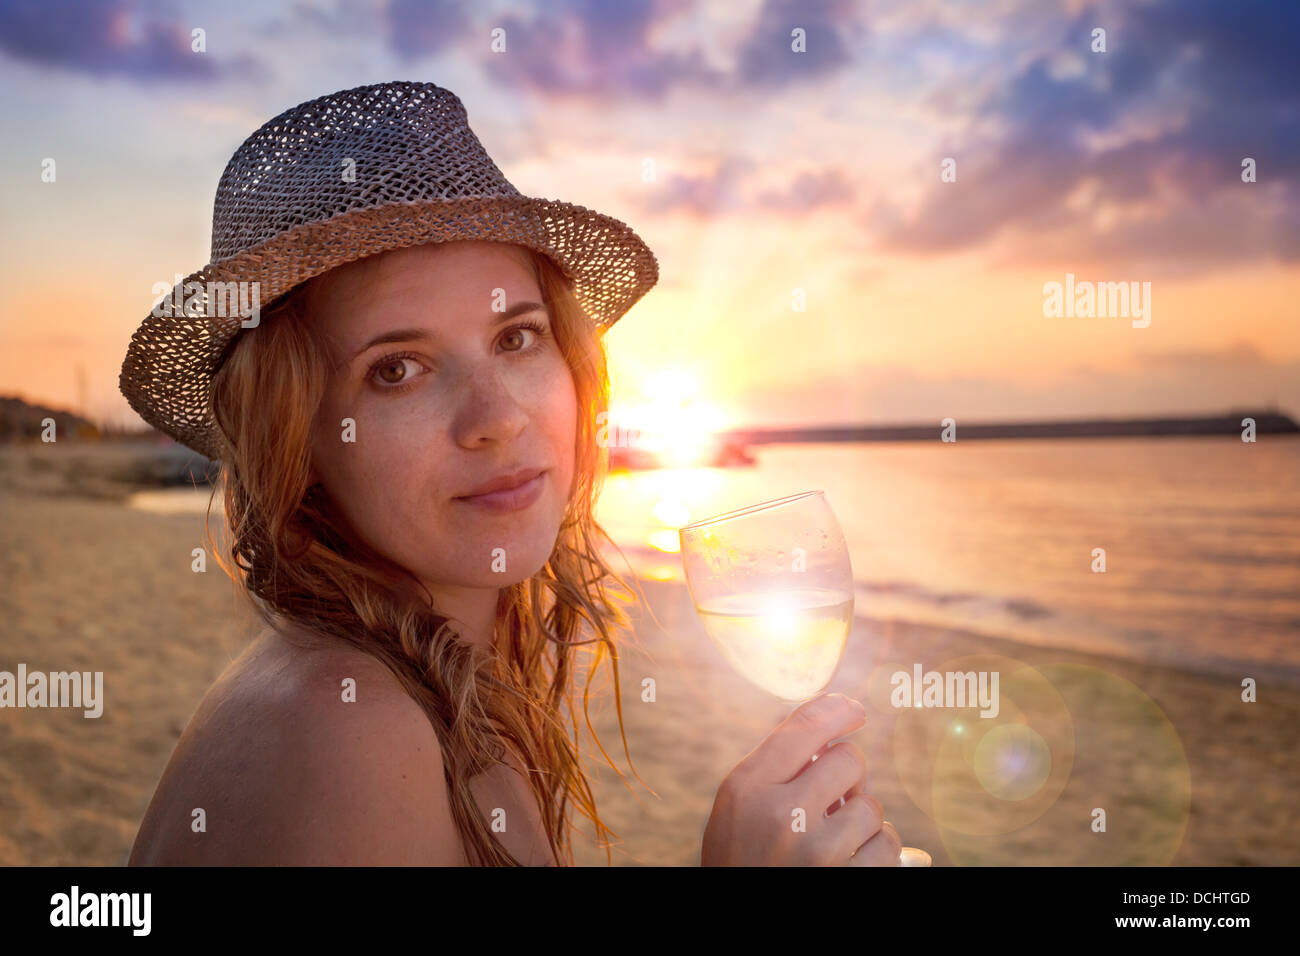 Persone collezione: bella signora in hat con un bicchiere di vino sulla spiaggia Foto Stock